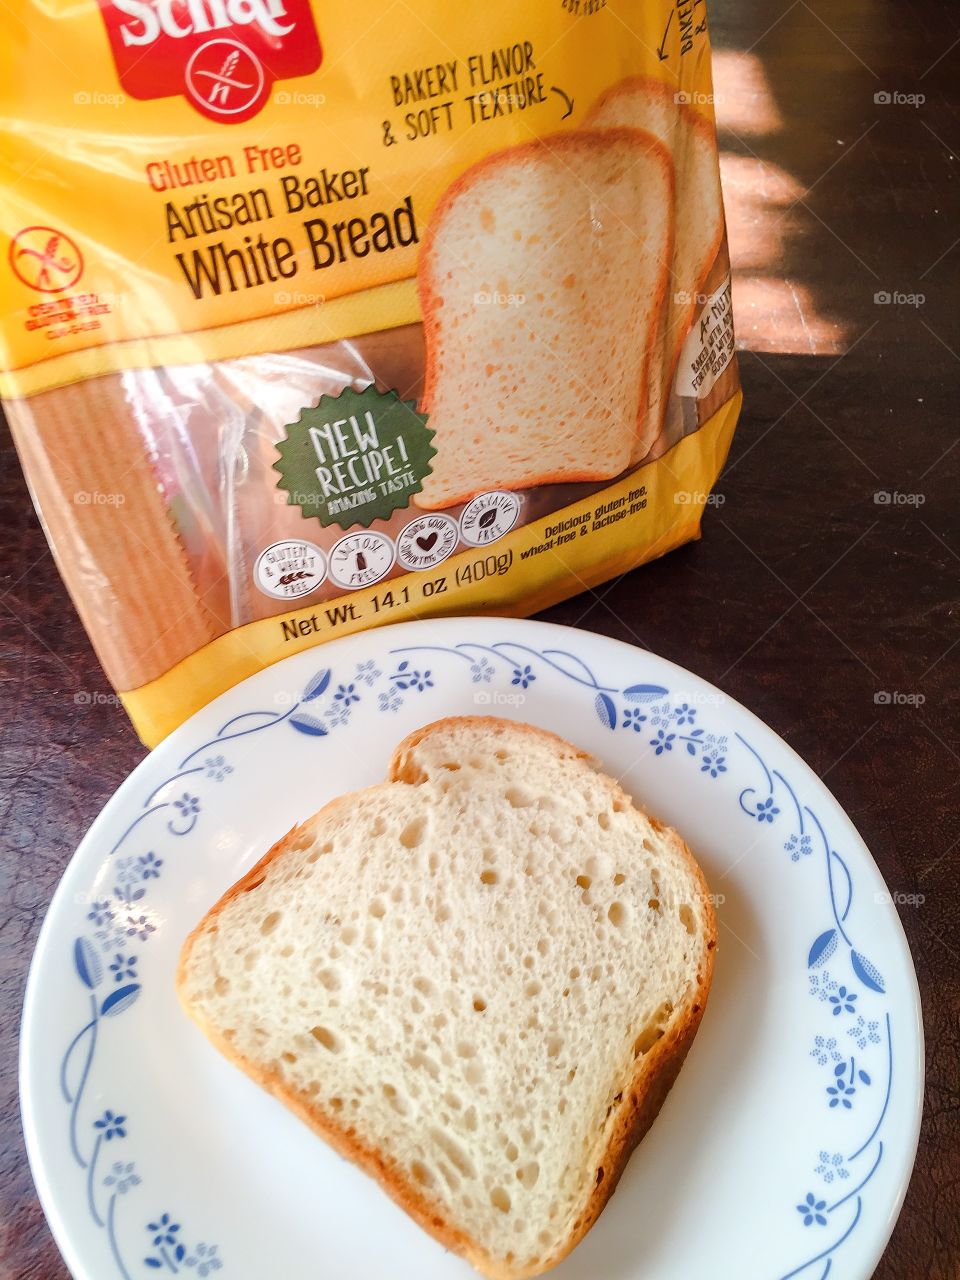 Schär Gluten Free Artisan Baker White Bread